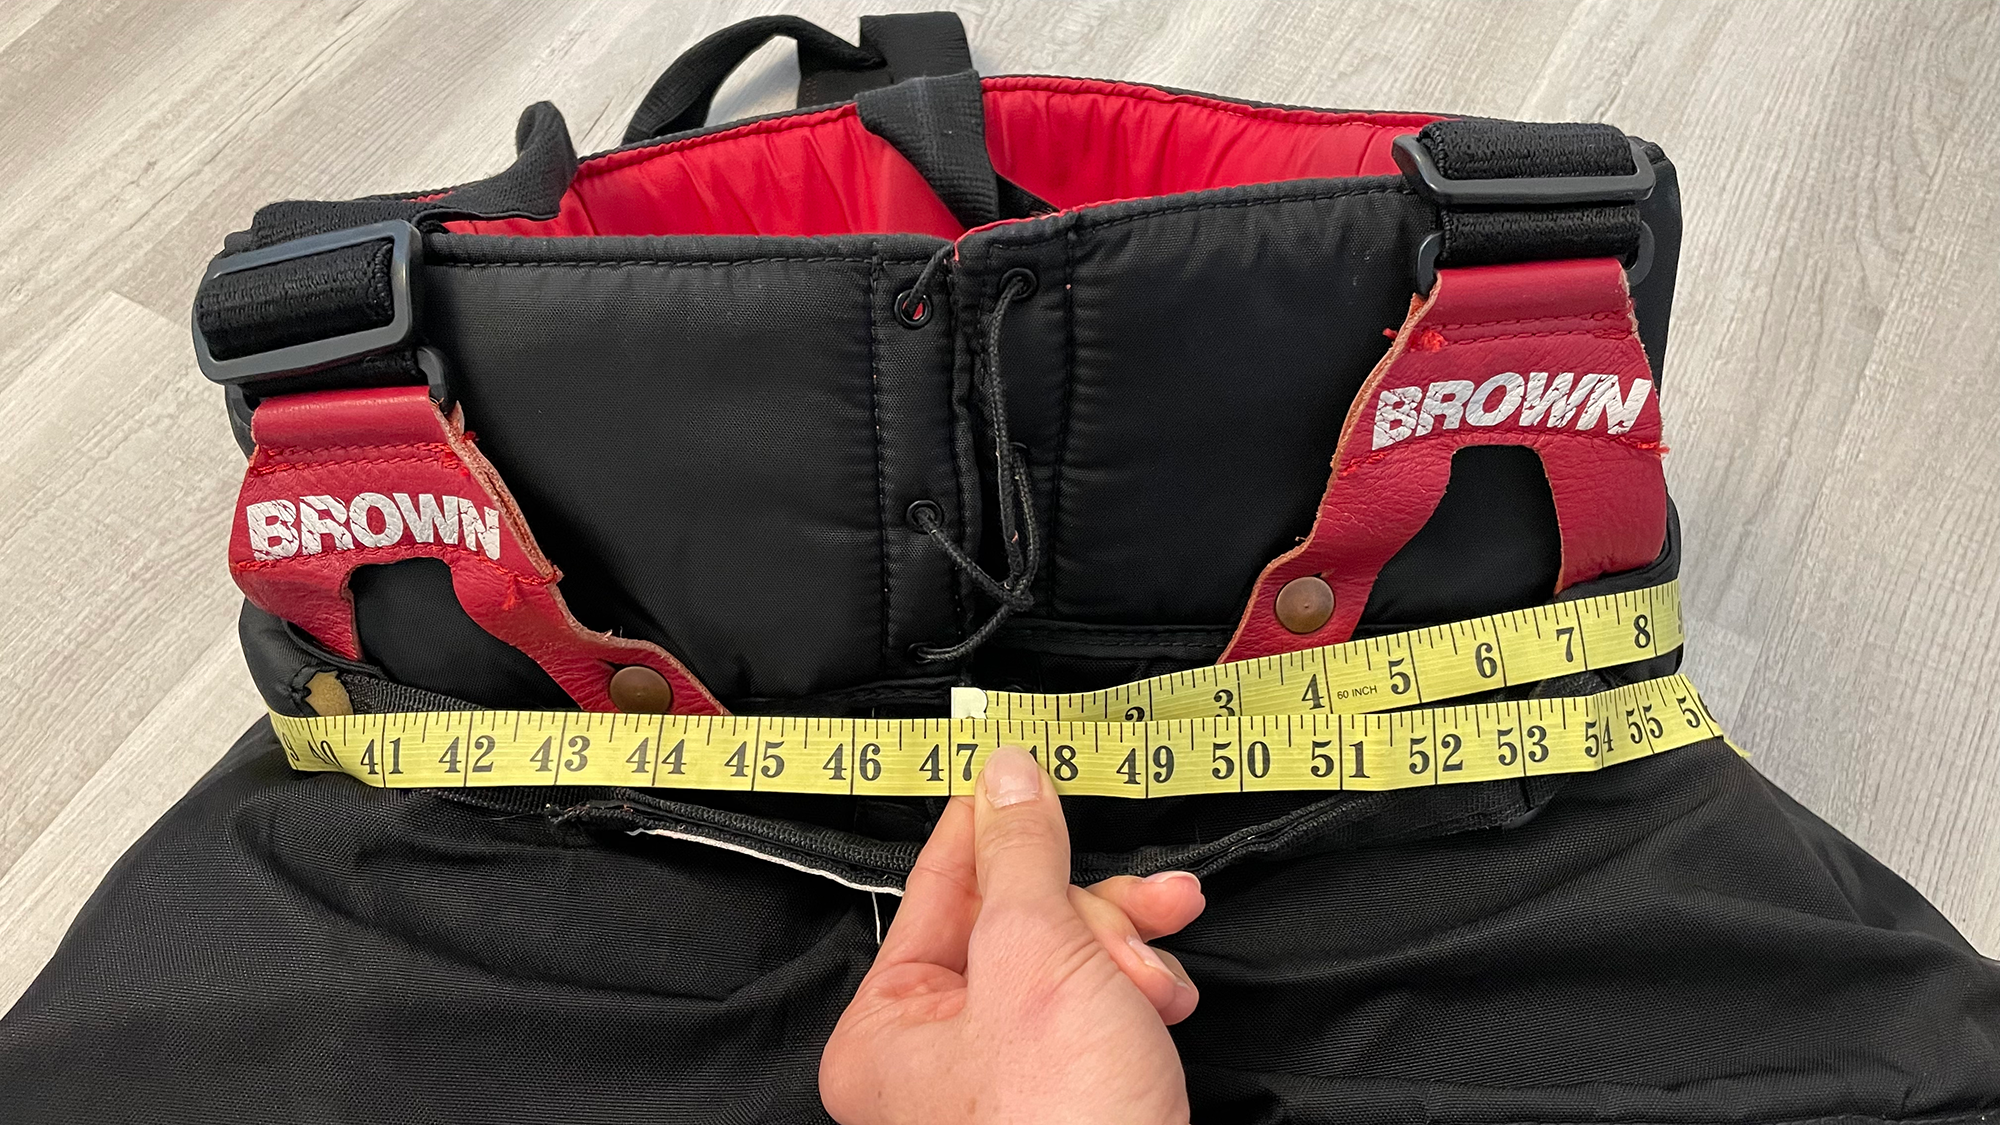 Measuring external pant circumference